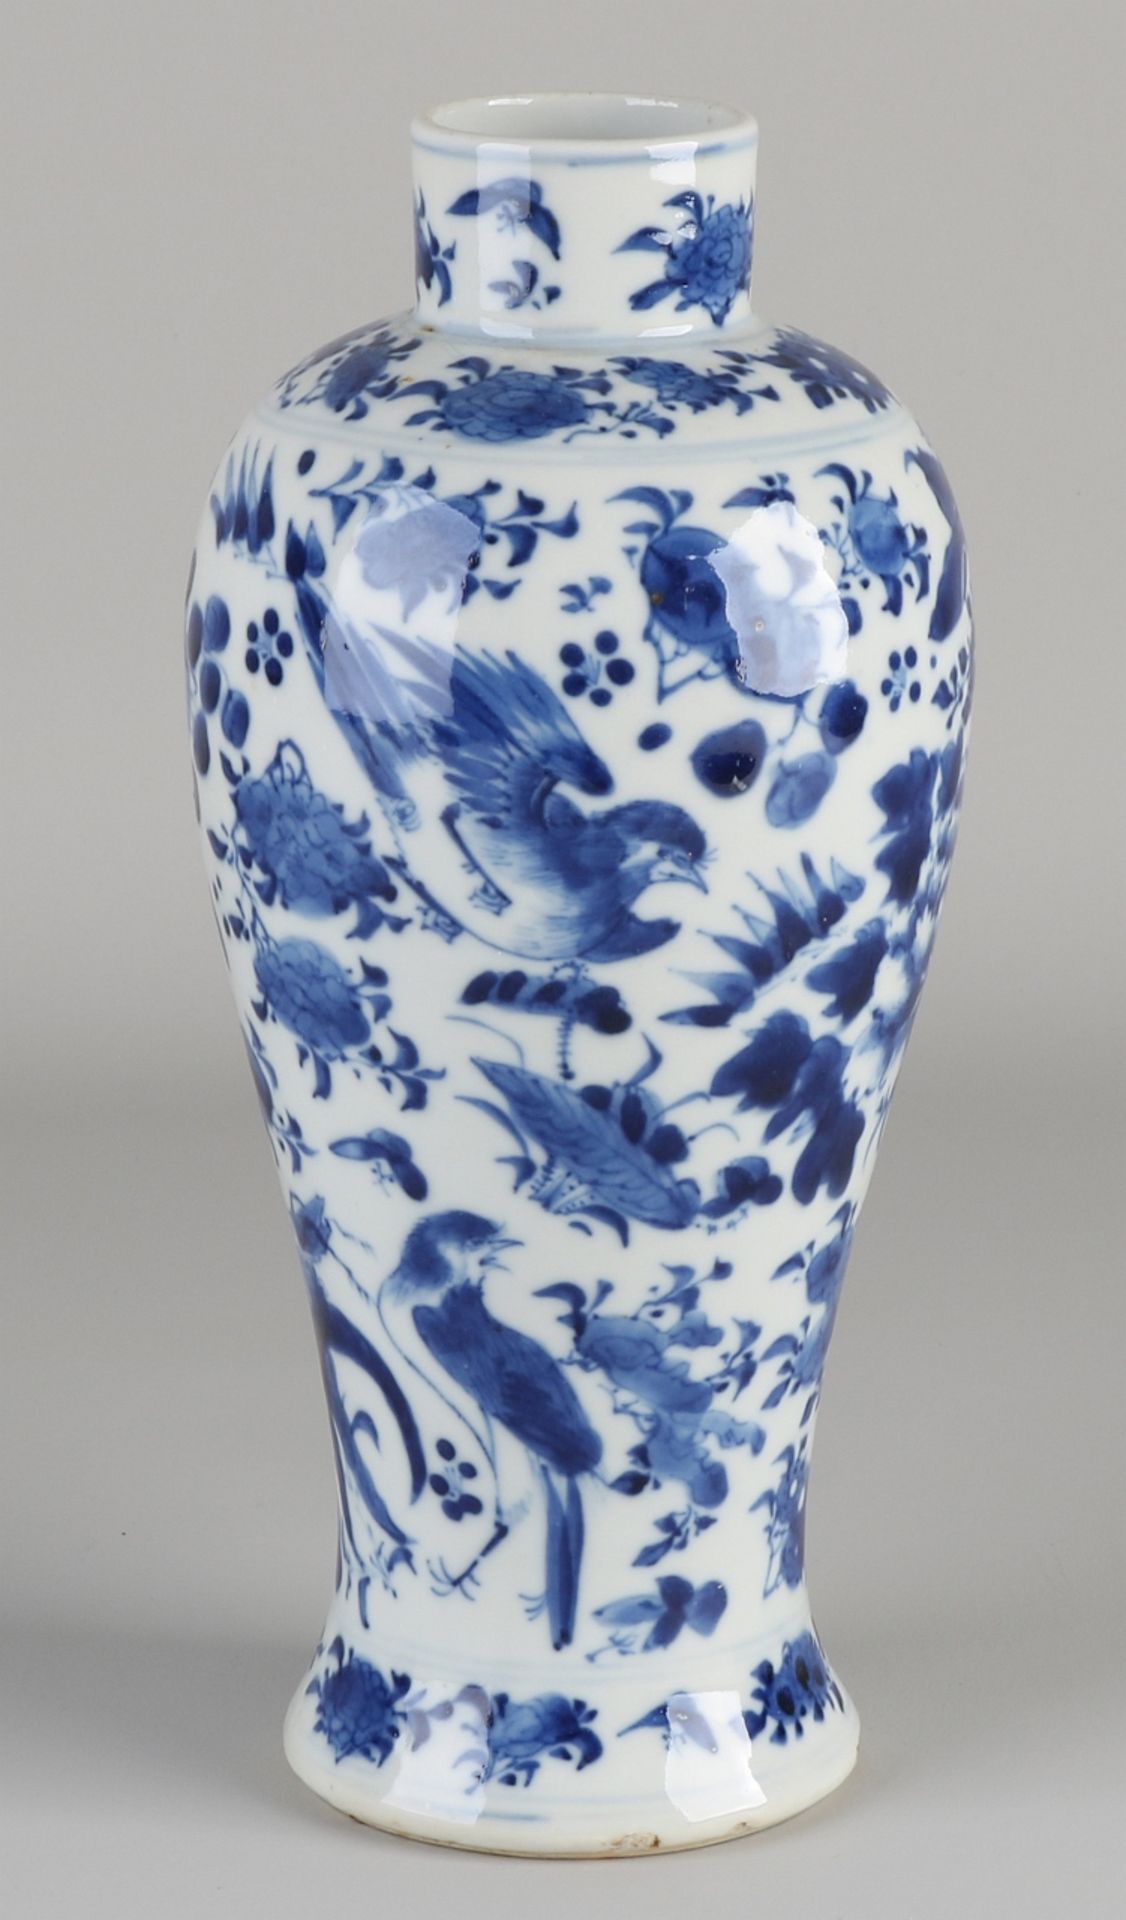 Chinesische Porzellanvase aus dem 18. - 19. Jahrhundert mit Blumen- / Vogeldekoration und vierstell